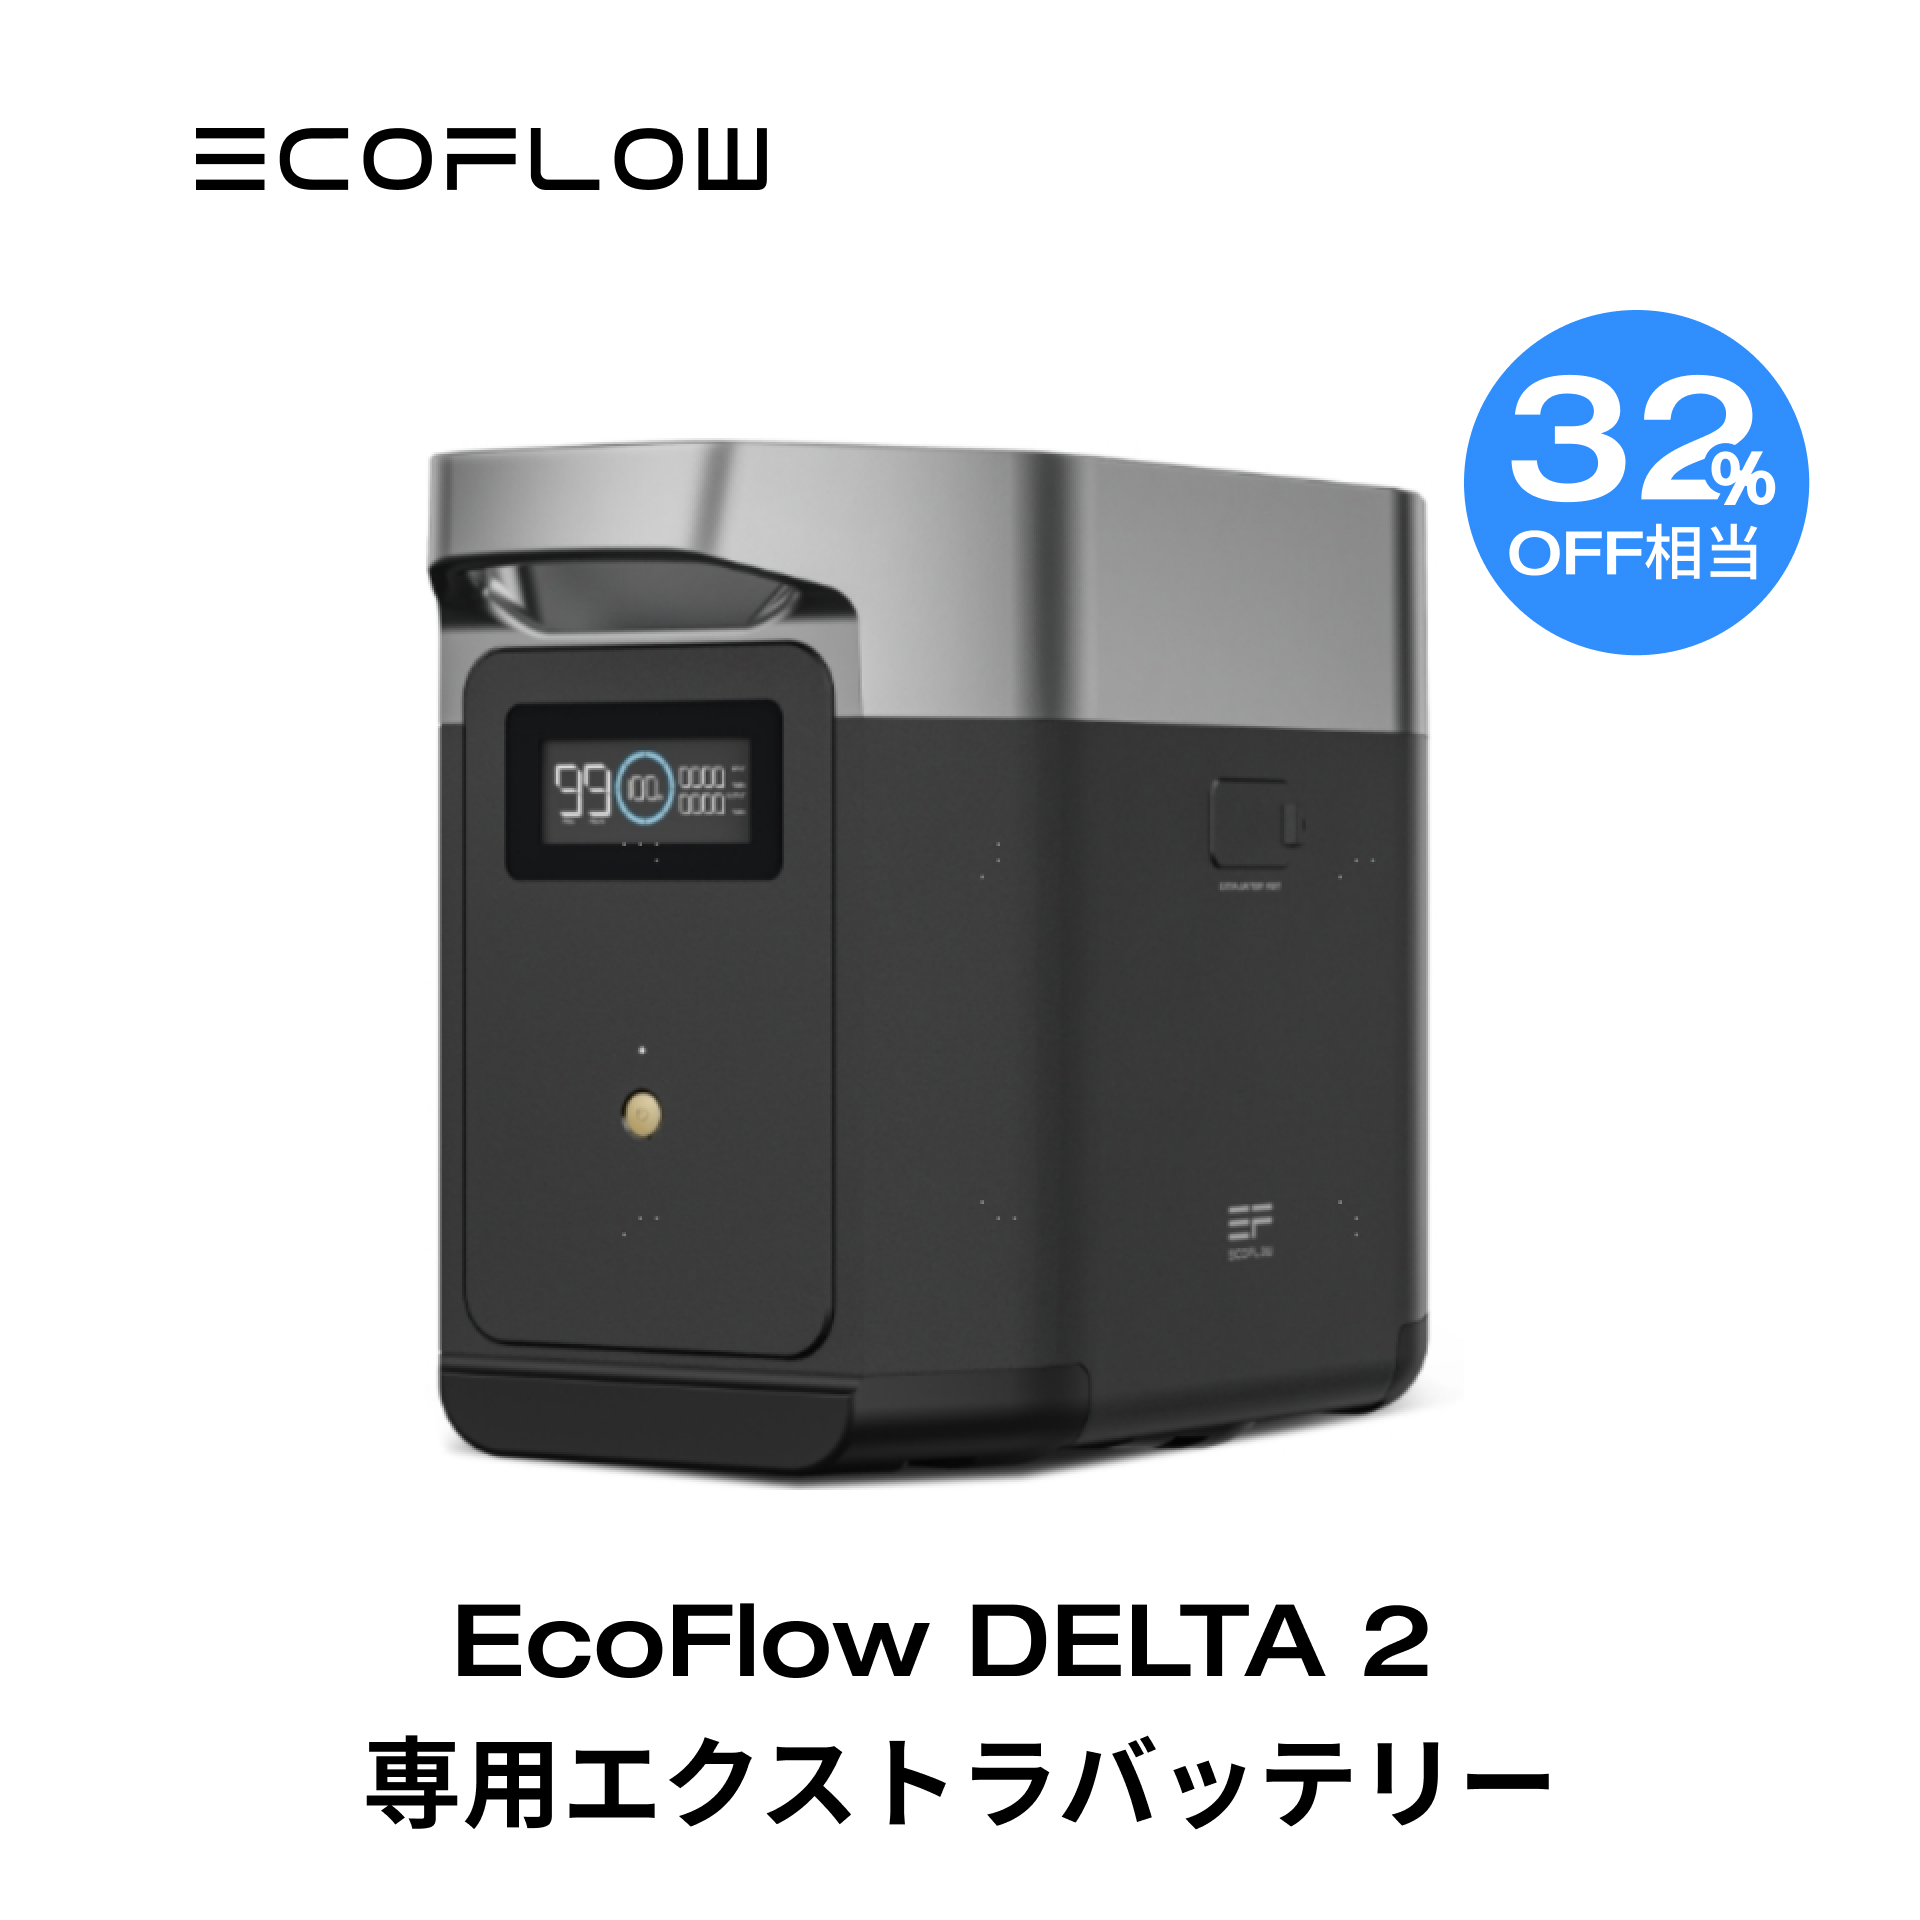 楽天市場】【2/25限定!31%OFF相当!クーポン併用で226,000円!】EcoFlow